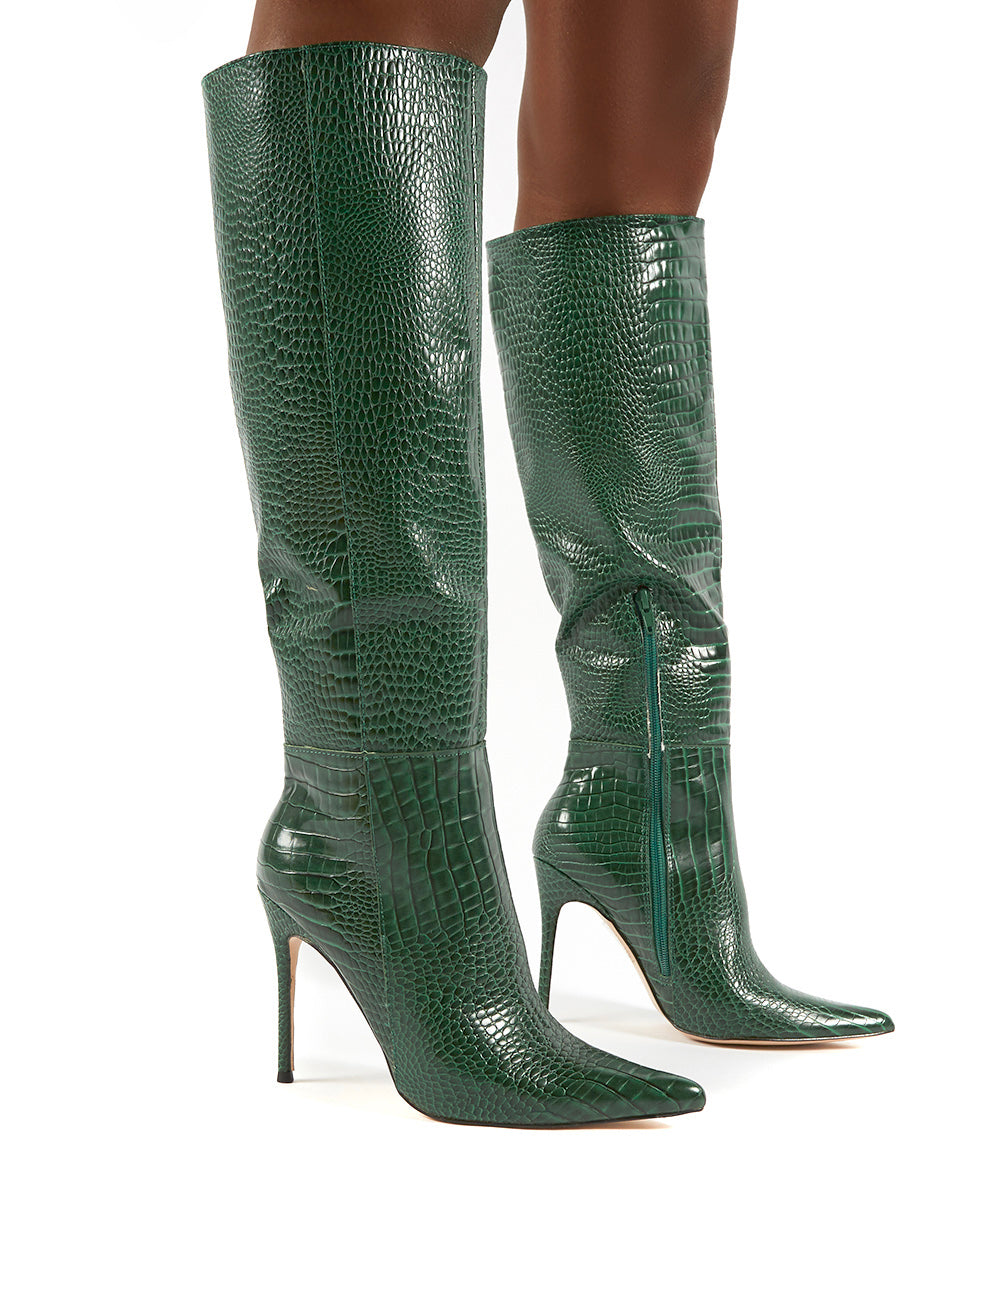 green croc heels